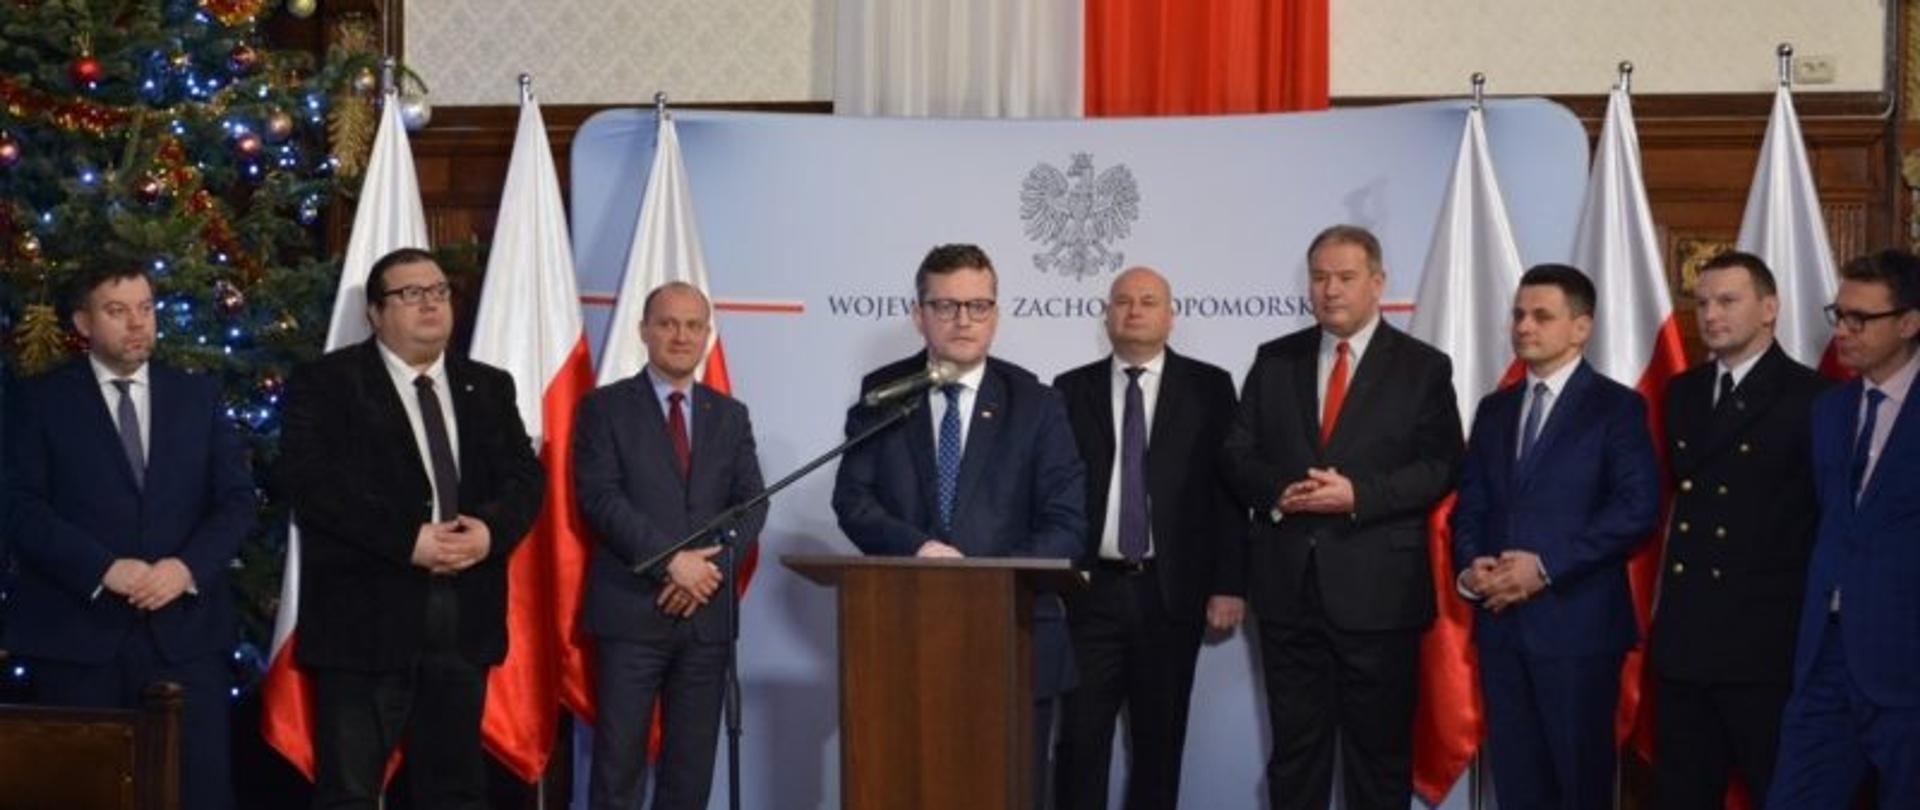 Tor wodny Świnoujście-Szczecin będzie miał 12,5 metra. Podpisano umowę na dofinansowanie ostatniego etapu inwestycji